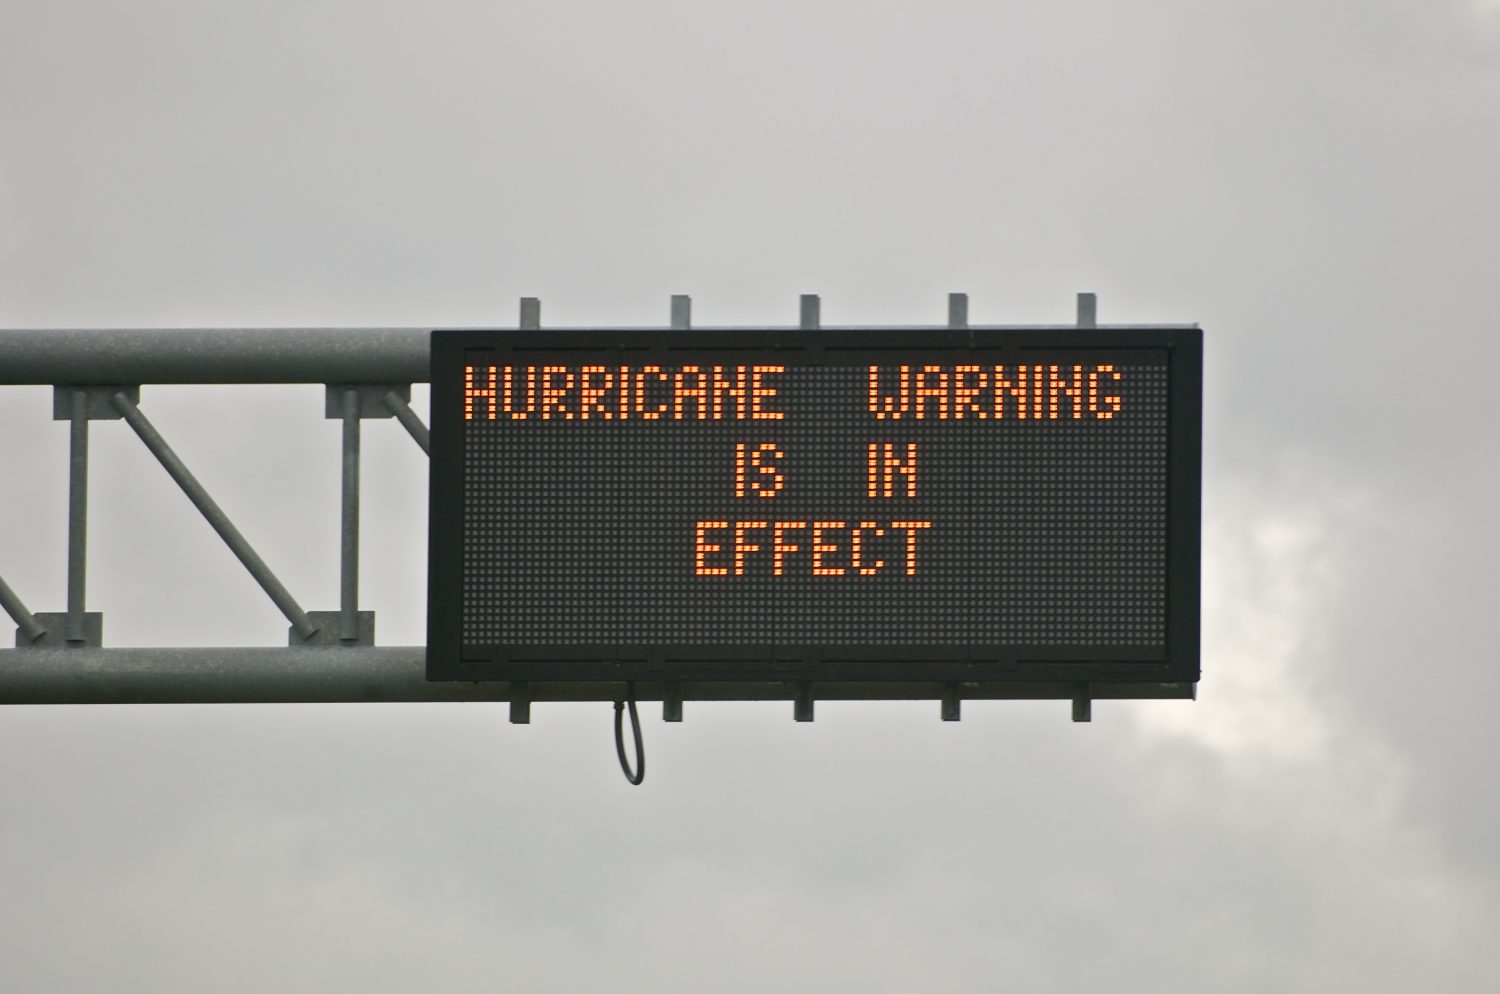 Road sign indicating a hurricane warning